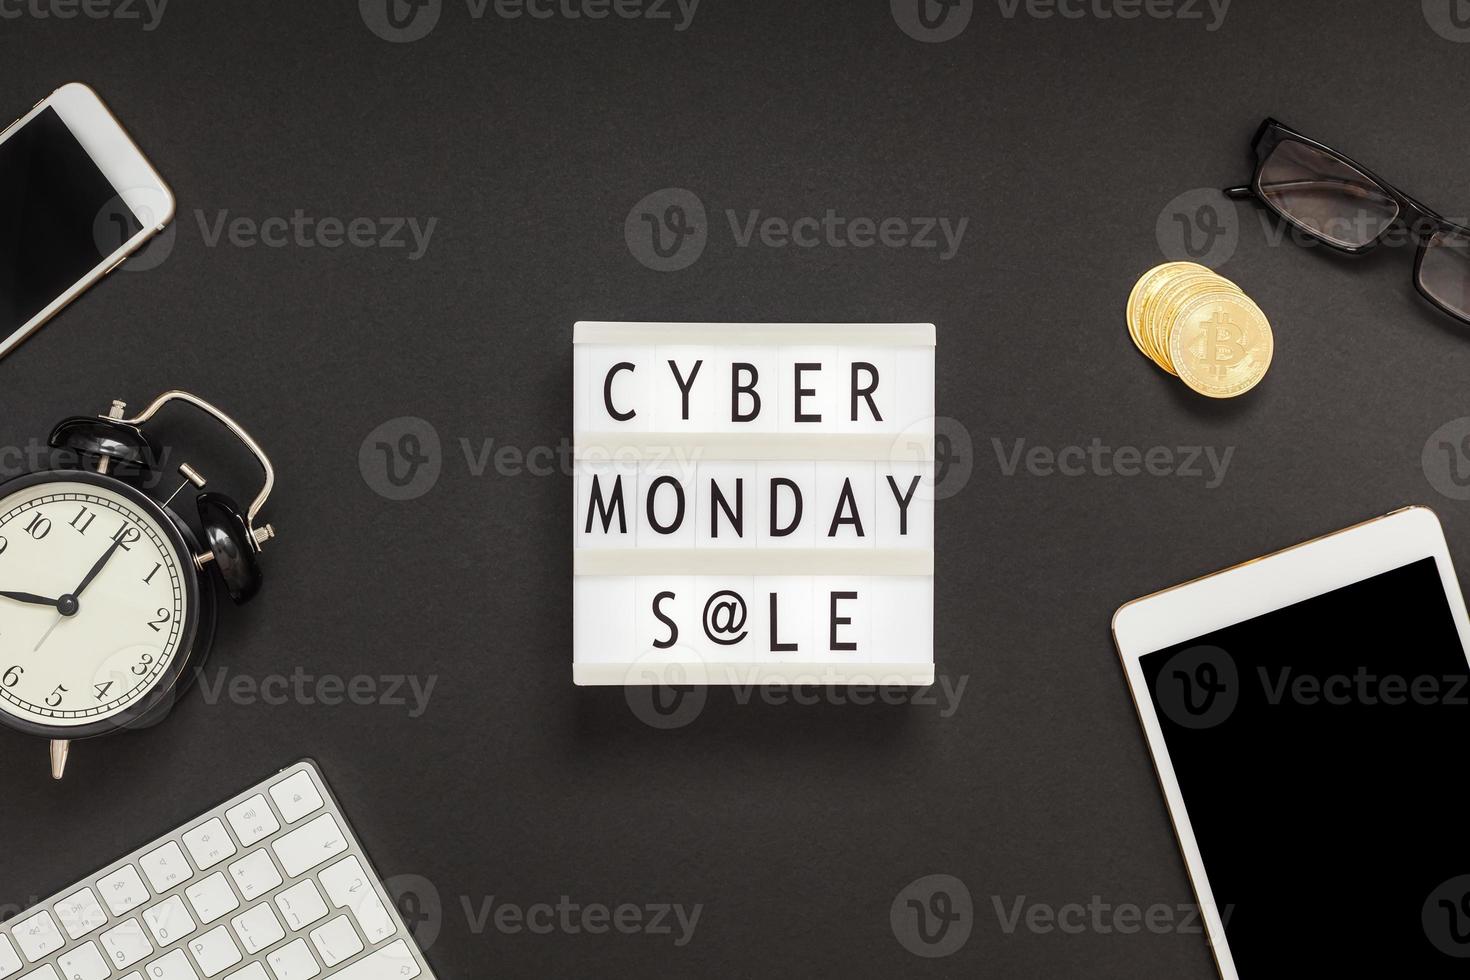 cyber måndag försäljning text på vit ljuslåda foto